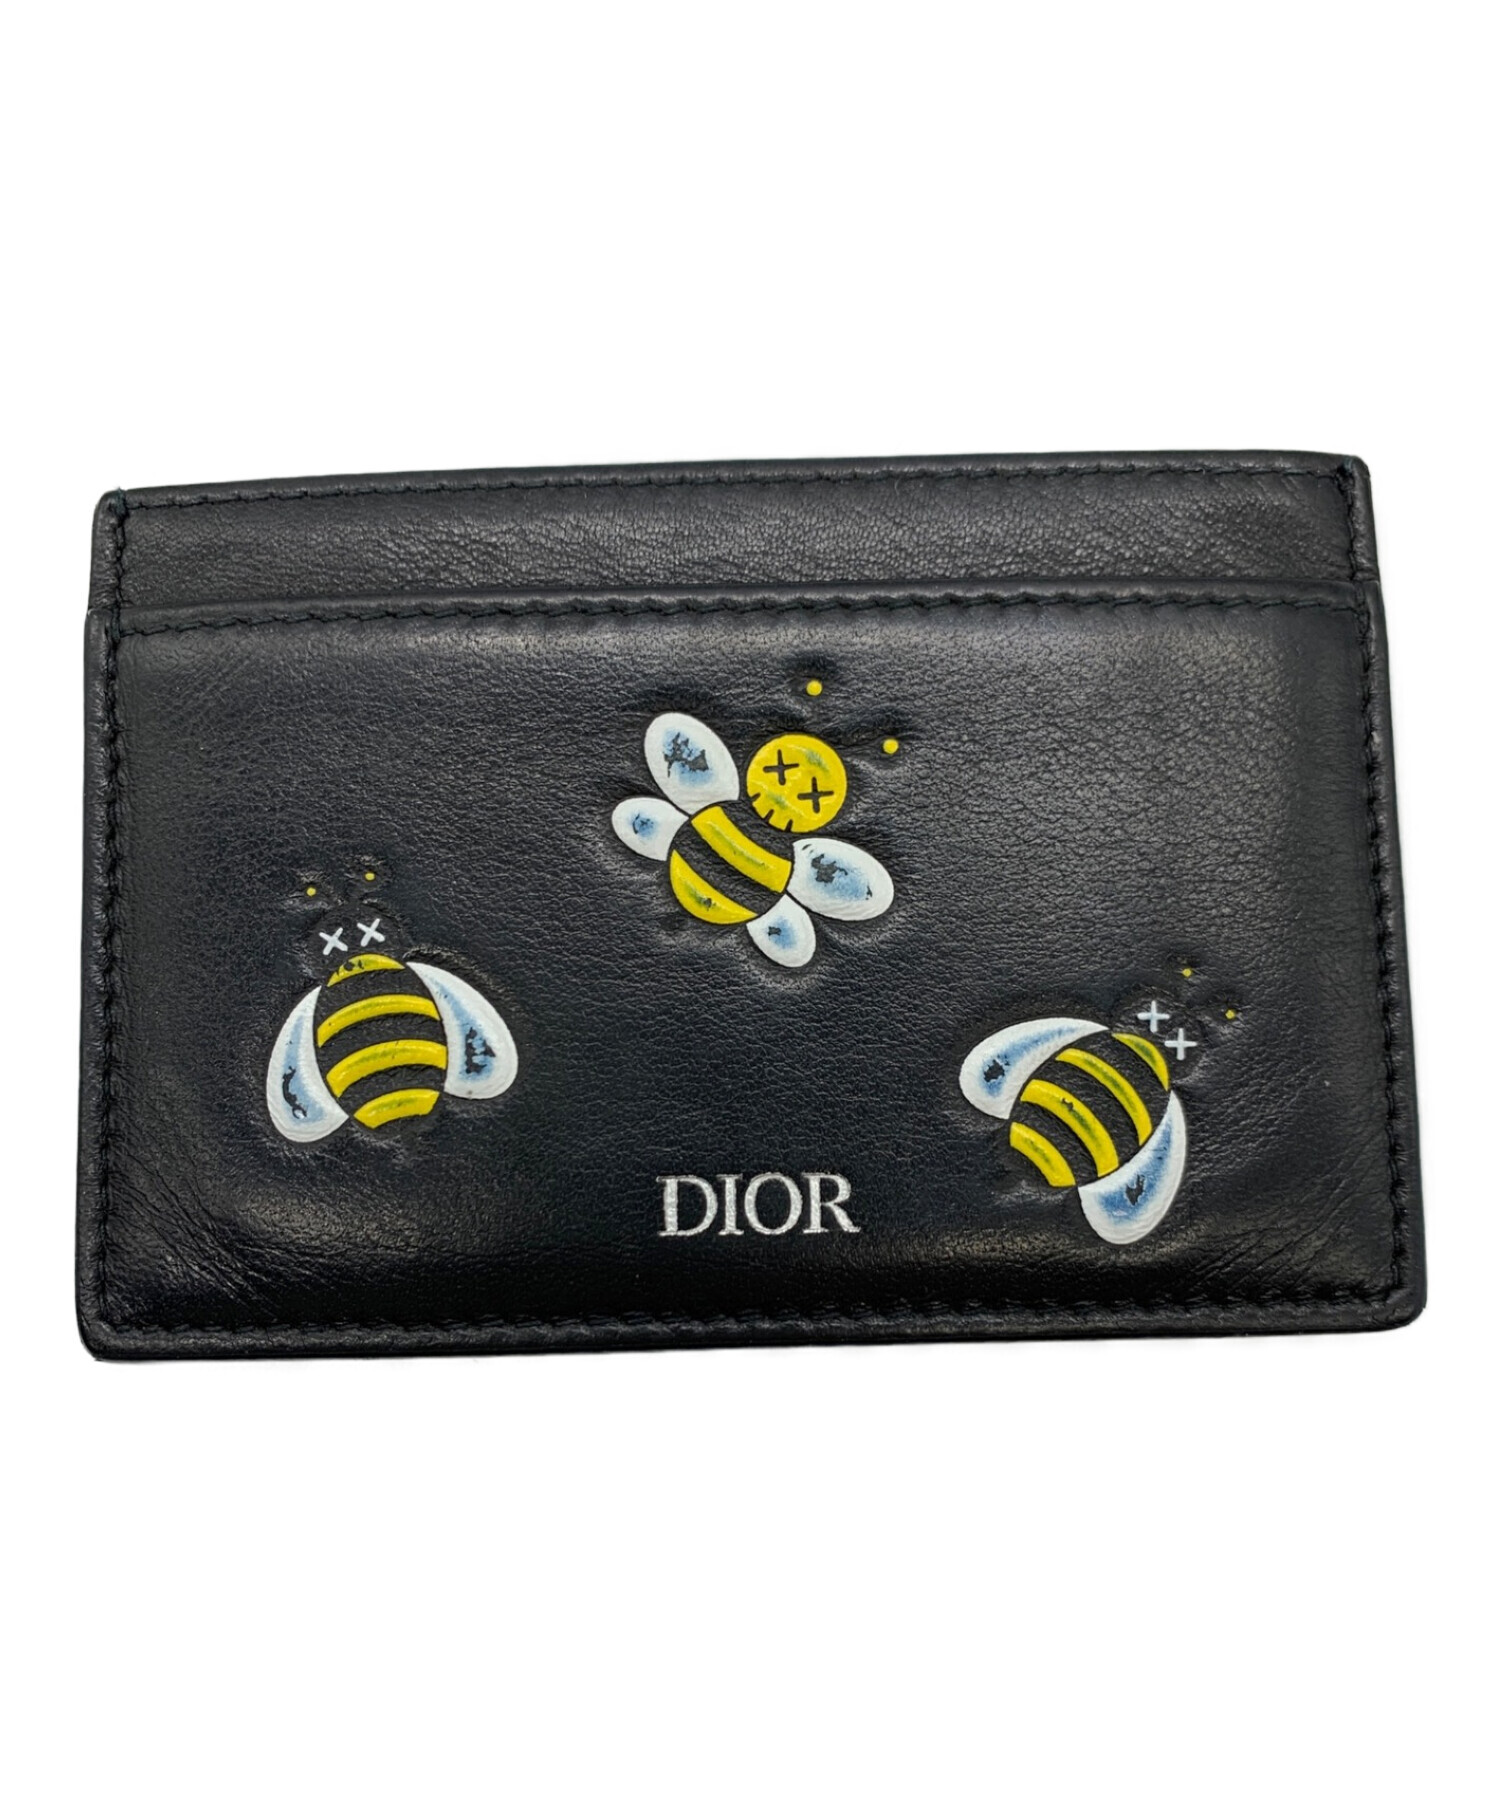 Dior kaws 財布